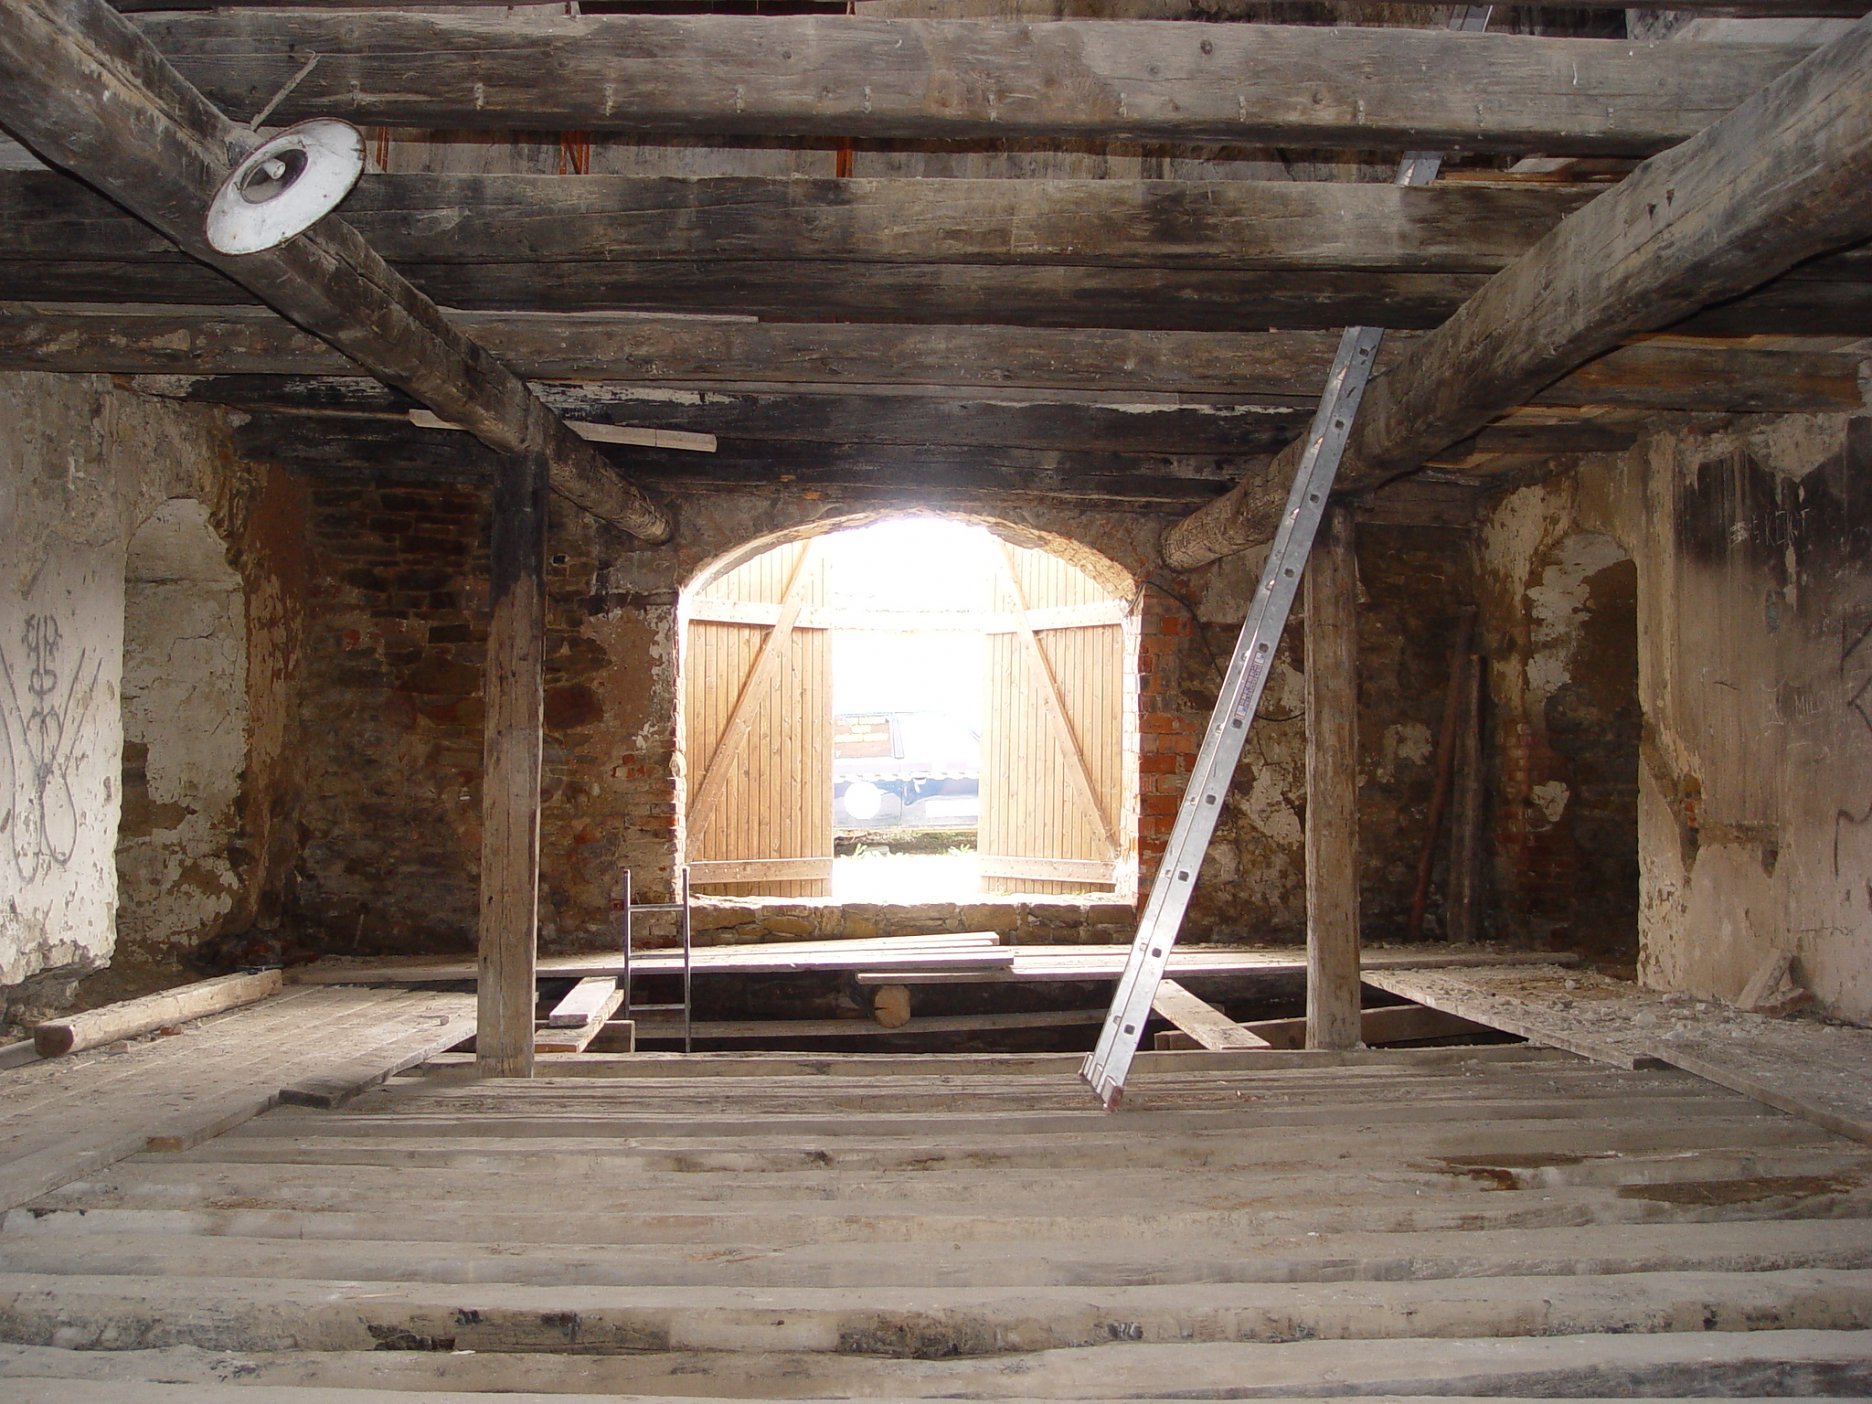 Pohľad z interiéru bašty do hradobnej uličky - stav pred obnovou, stopy po vyhorení